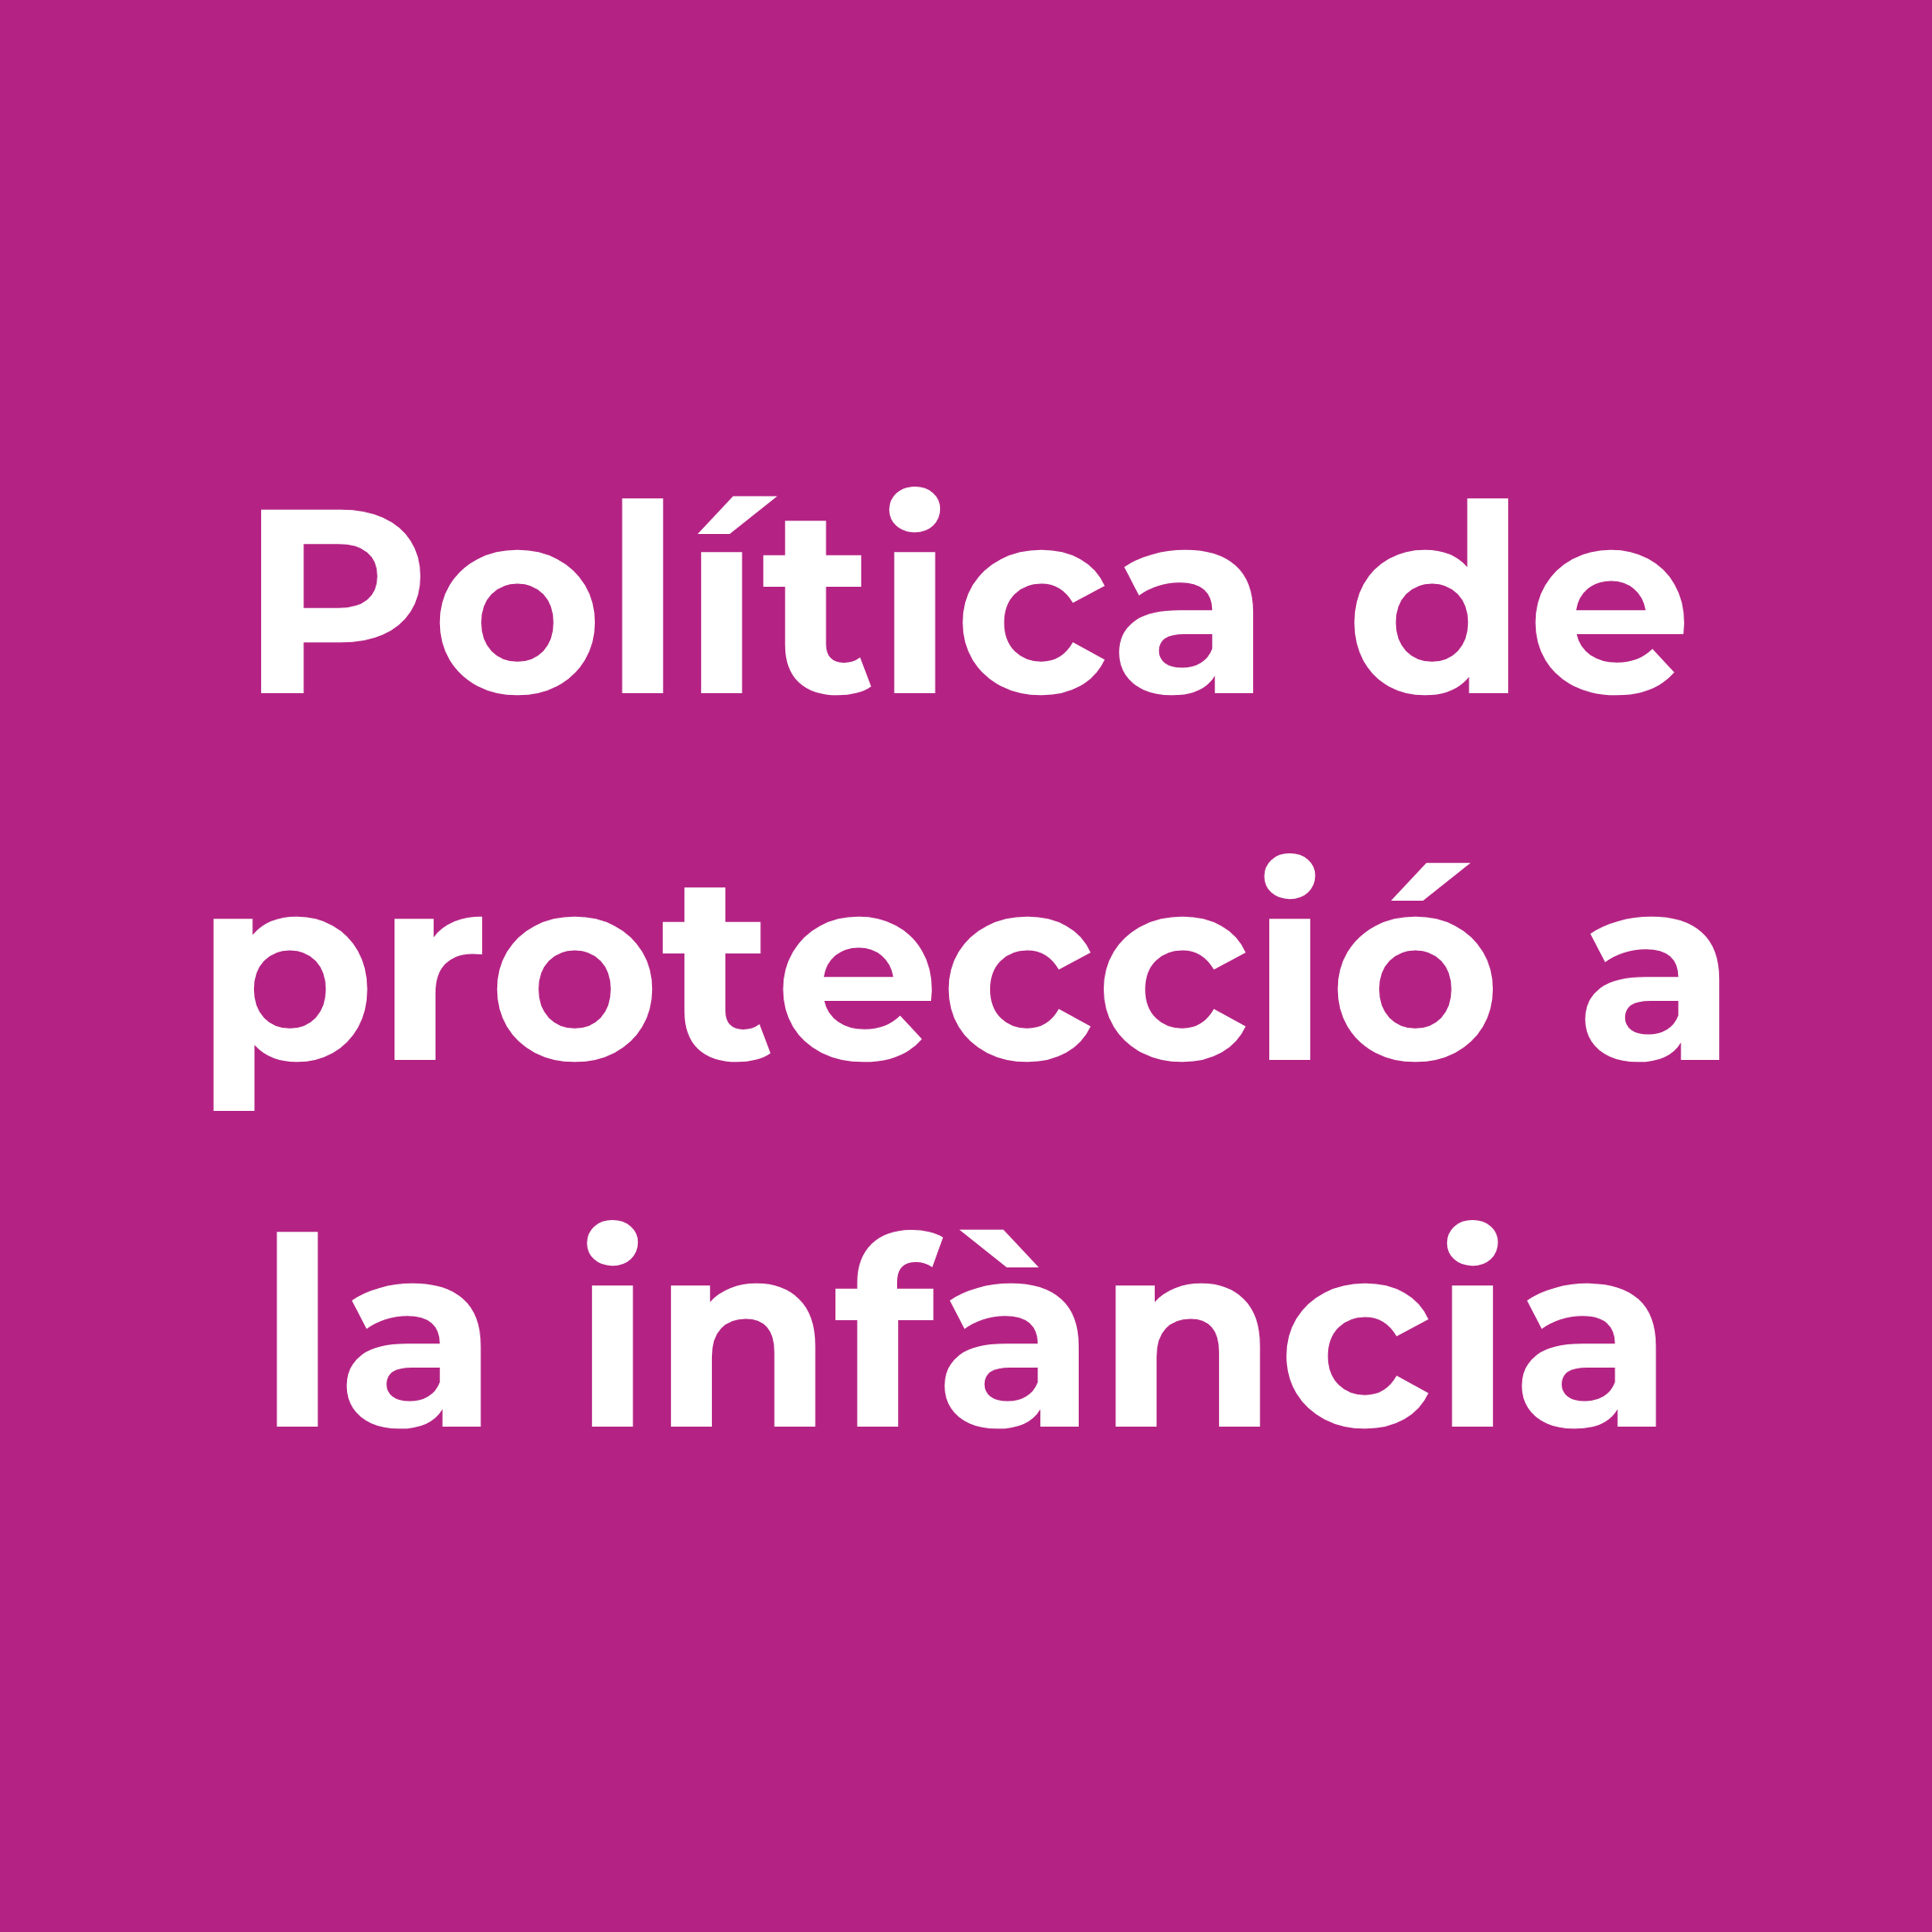 Proteccio_Infancia